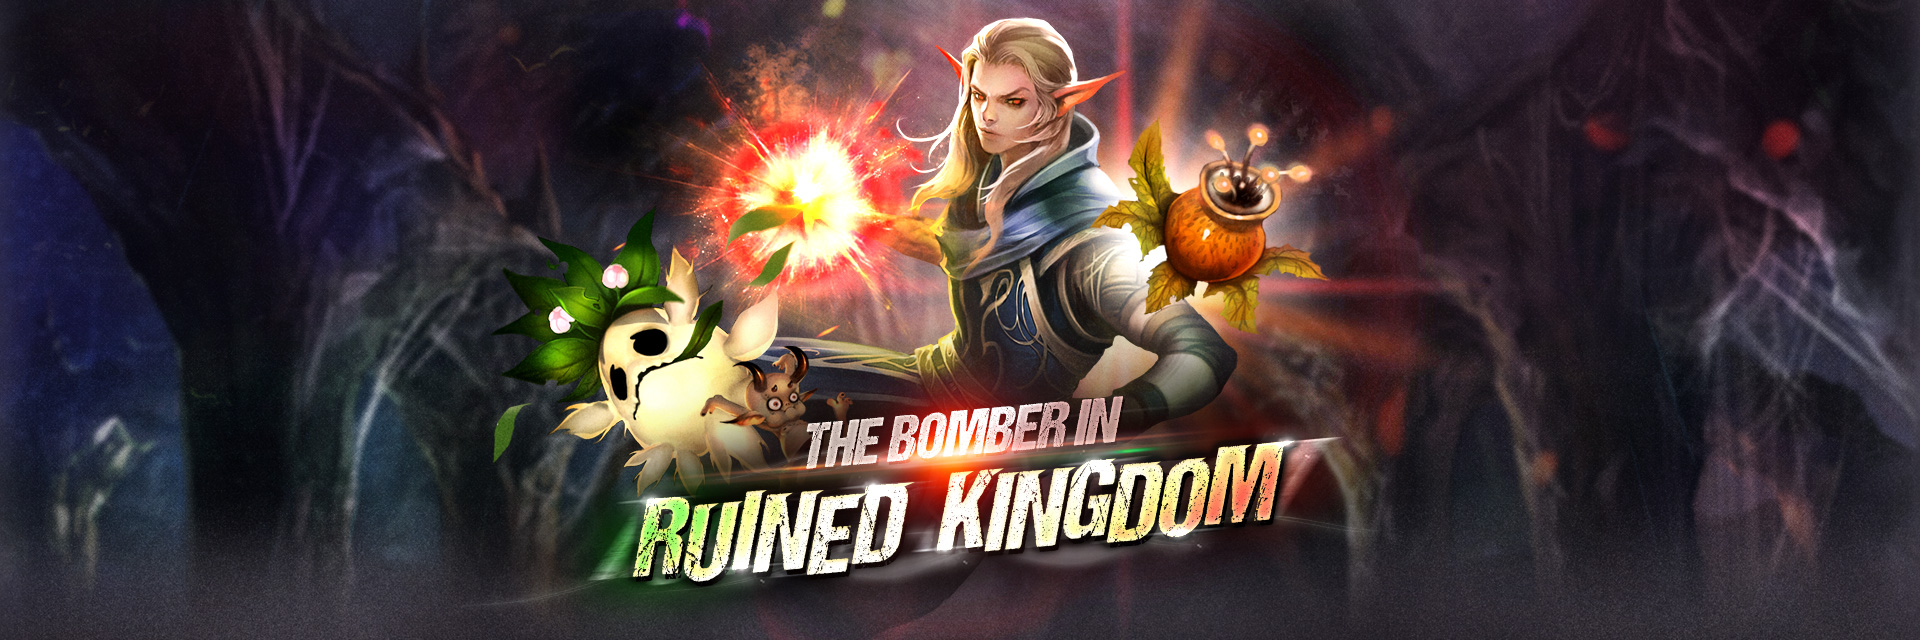 Bomber in Kingdom